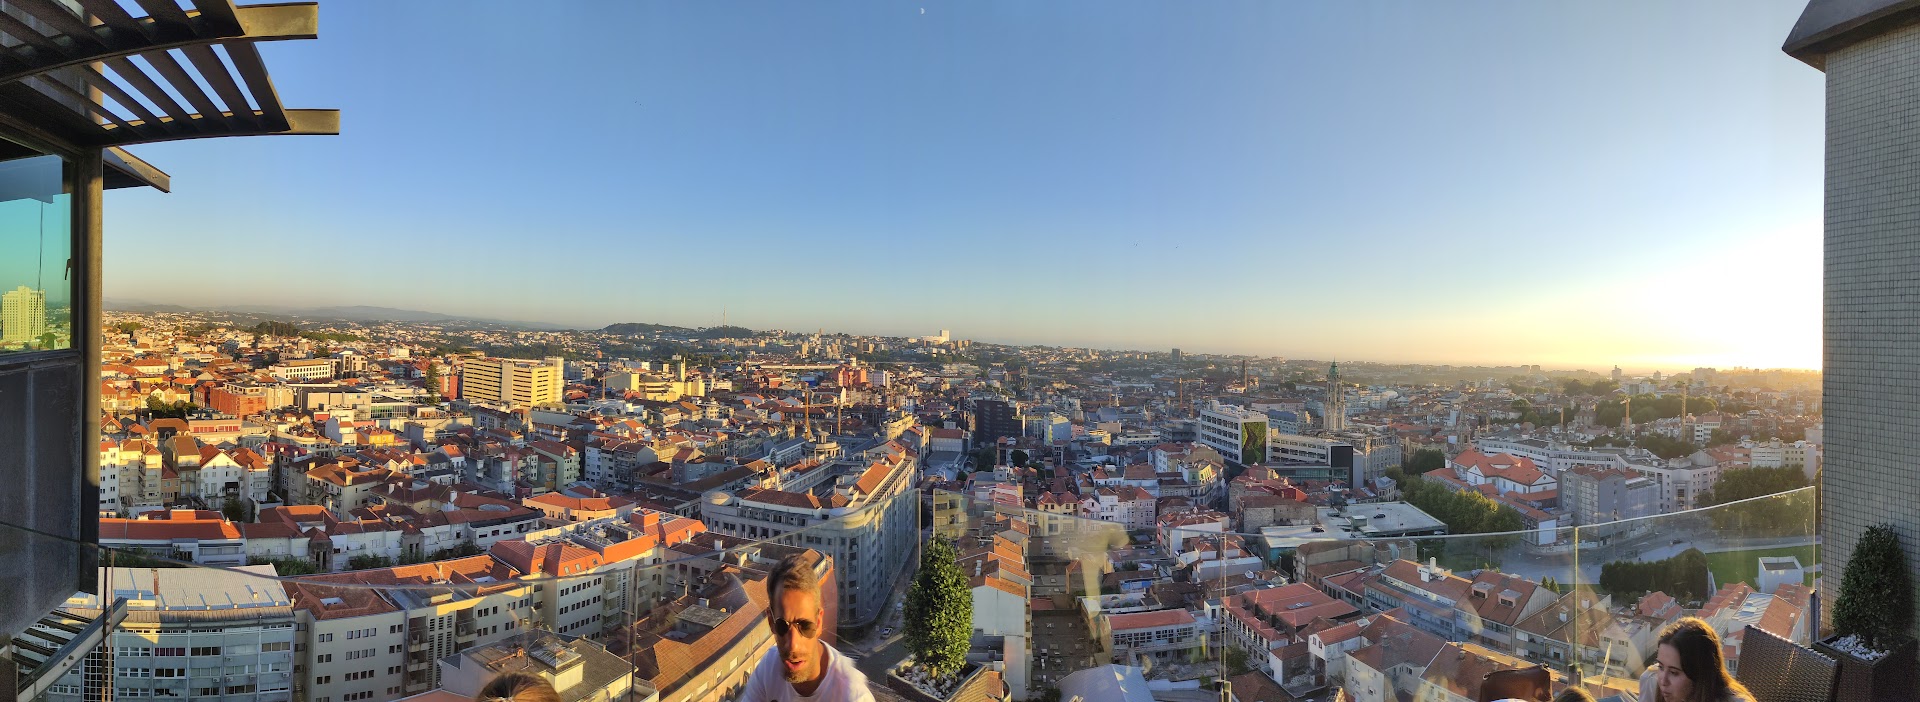 Visitar Oporto, guía de lo que no te puedes perder en una visita a la bella ciudad atlántica 18